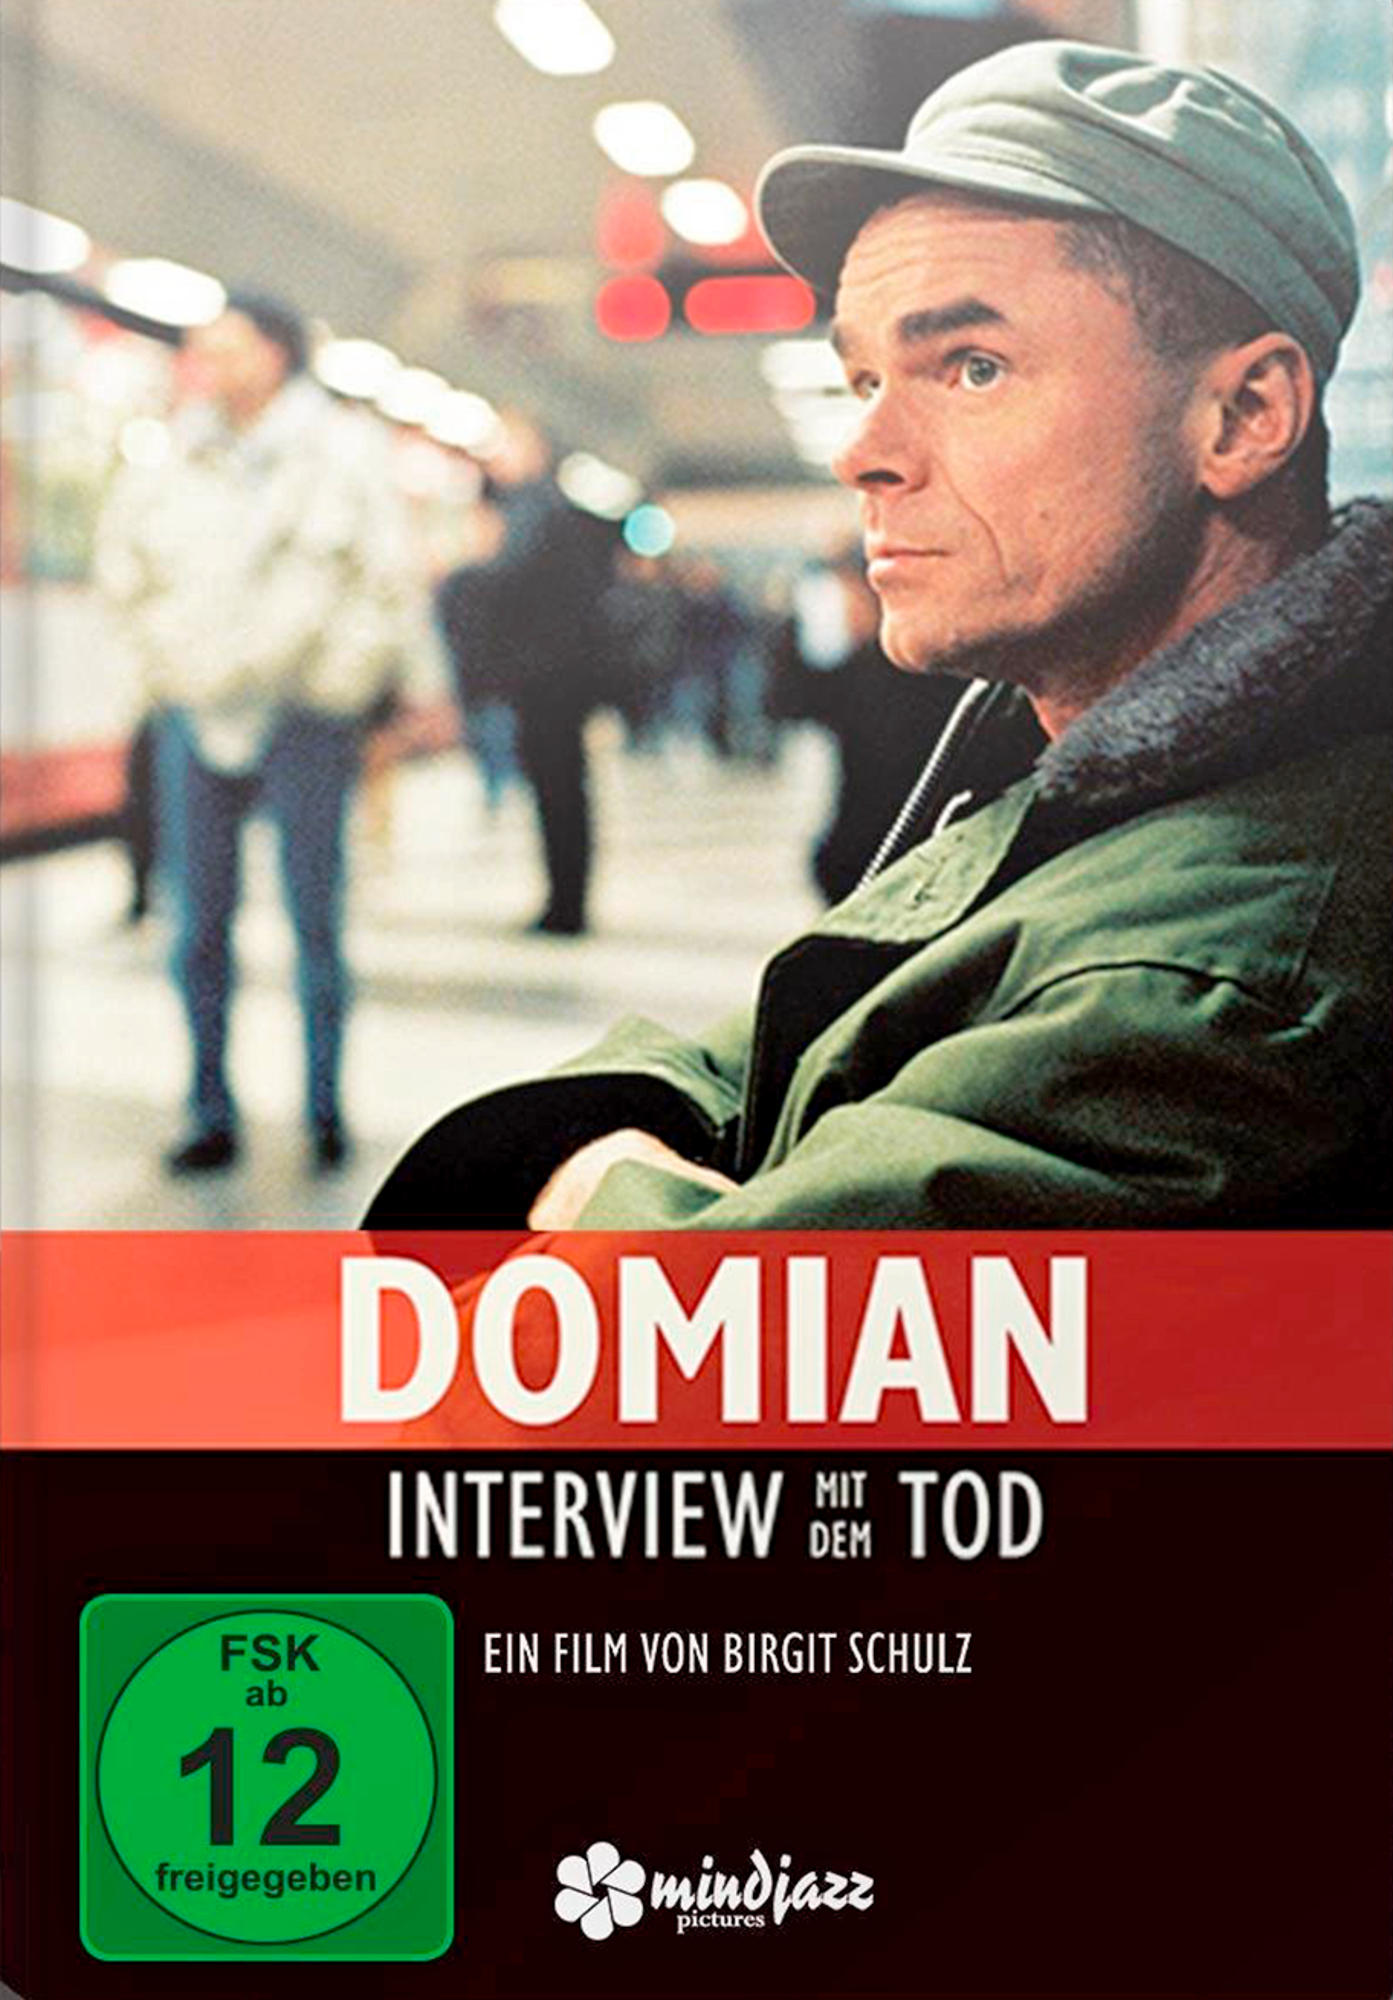 Domian mit DVD dem - Interview Tod